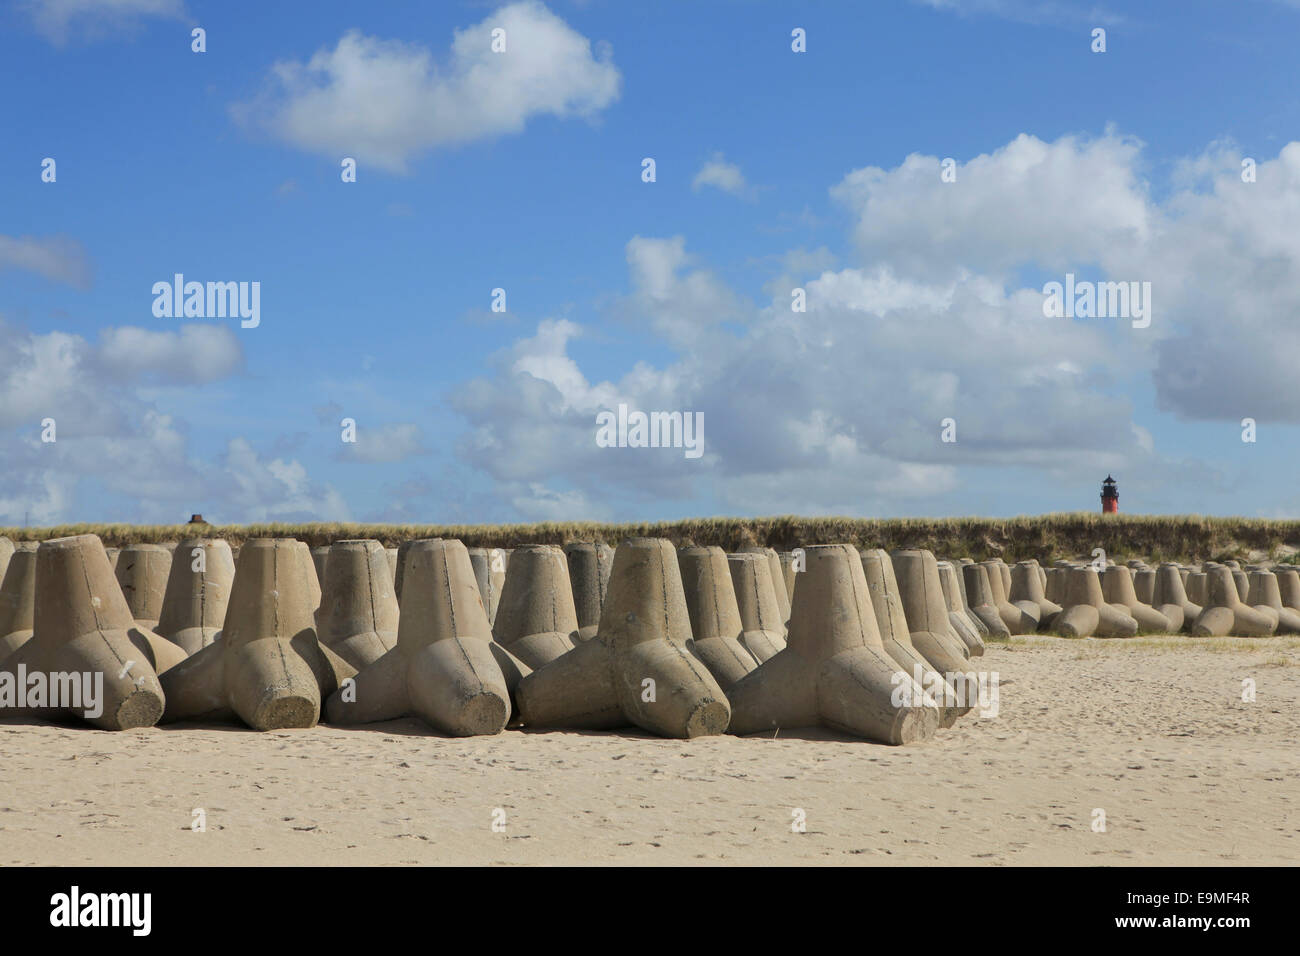 Tetrapod rocks arranged on sandy beach against sky Stock Photo